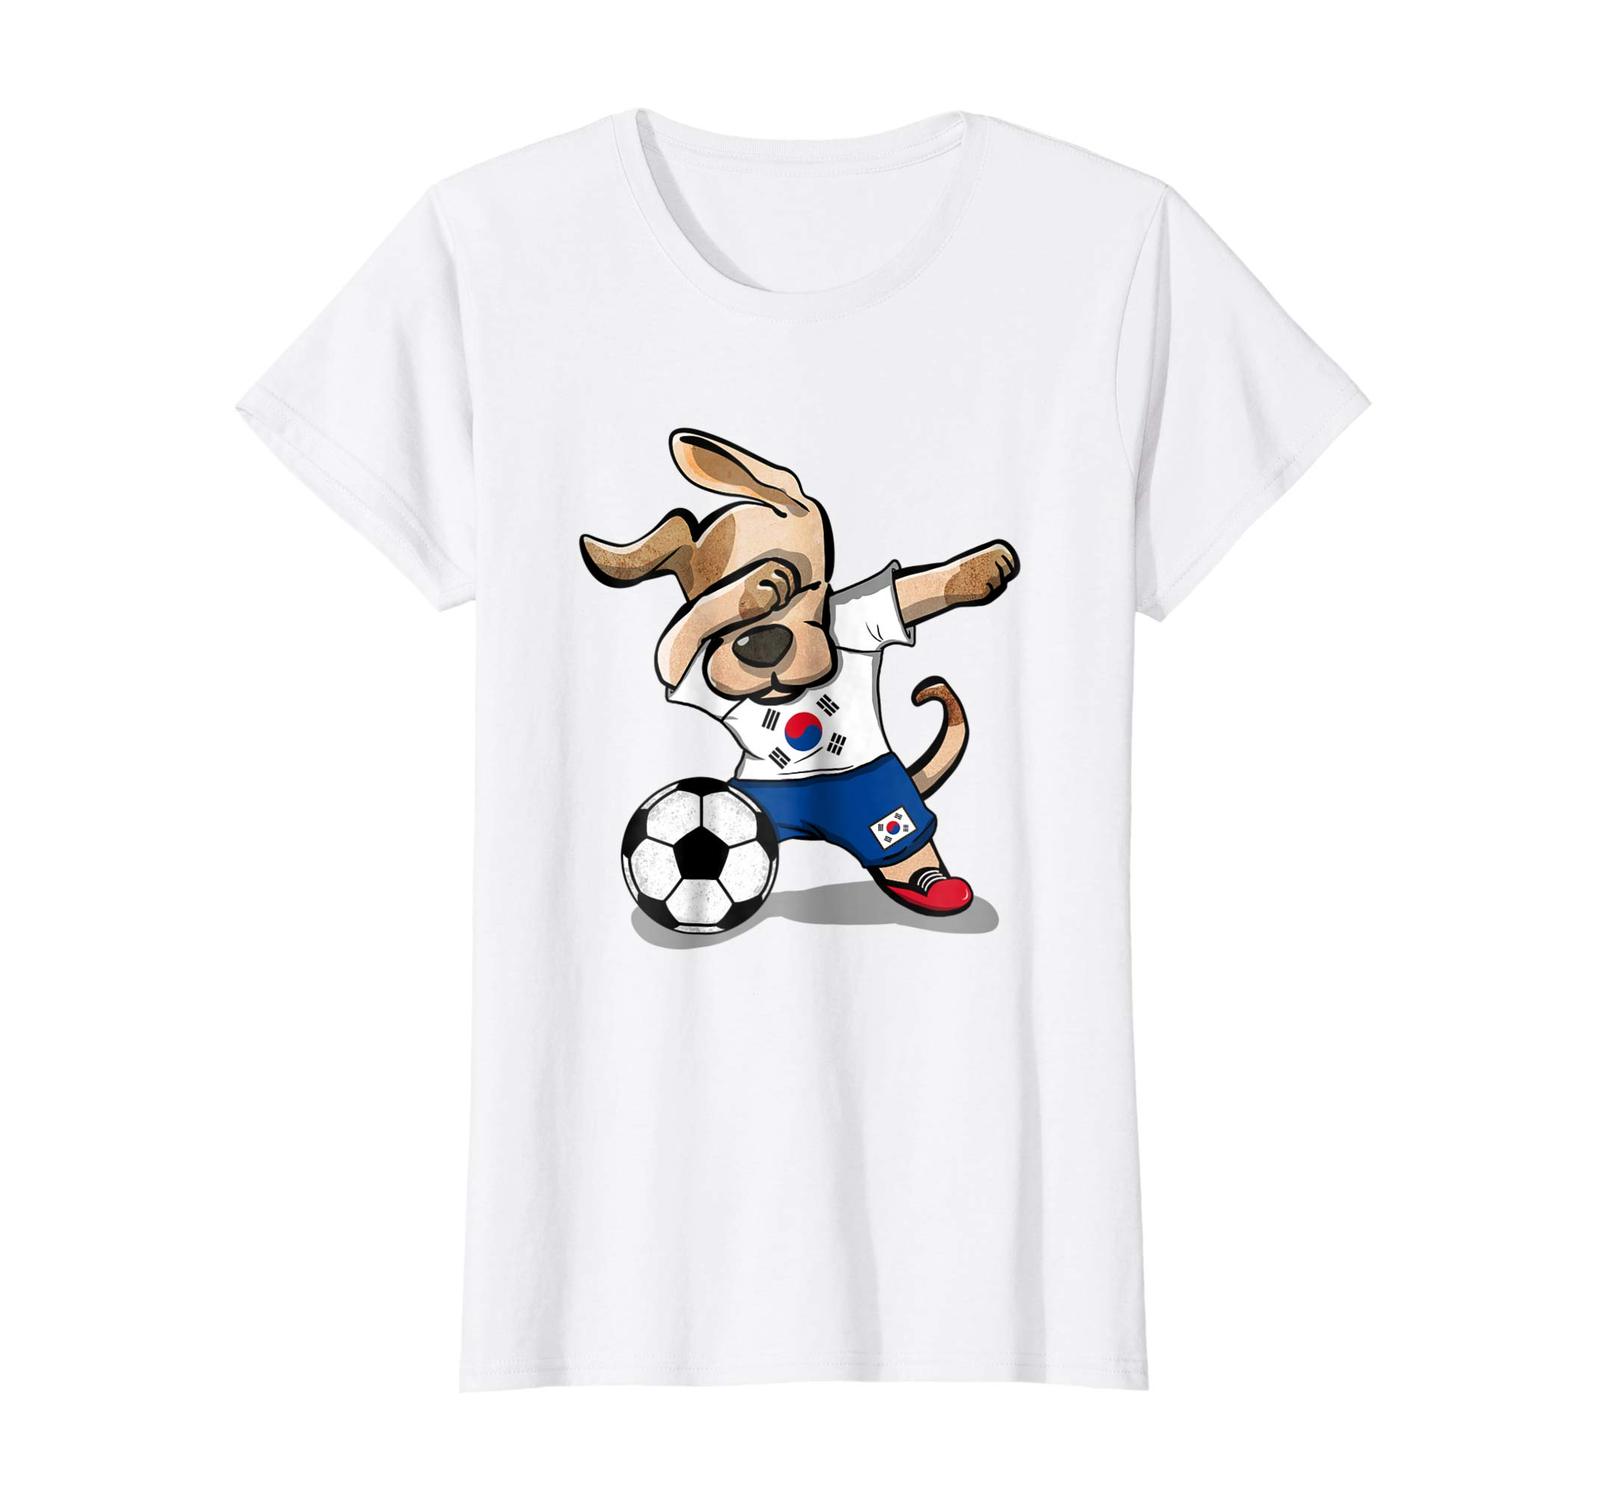 Dog Fashion - Dog Dabbing Soccer South Korea Jersey Shirt Korean Football Wowen